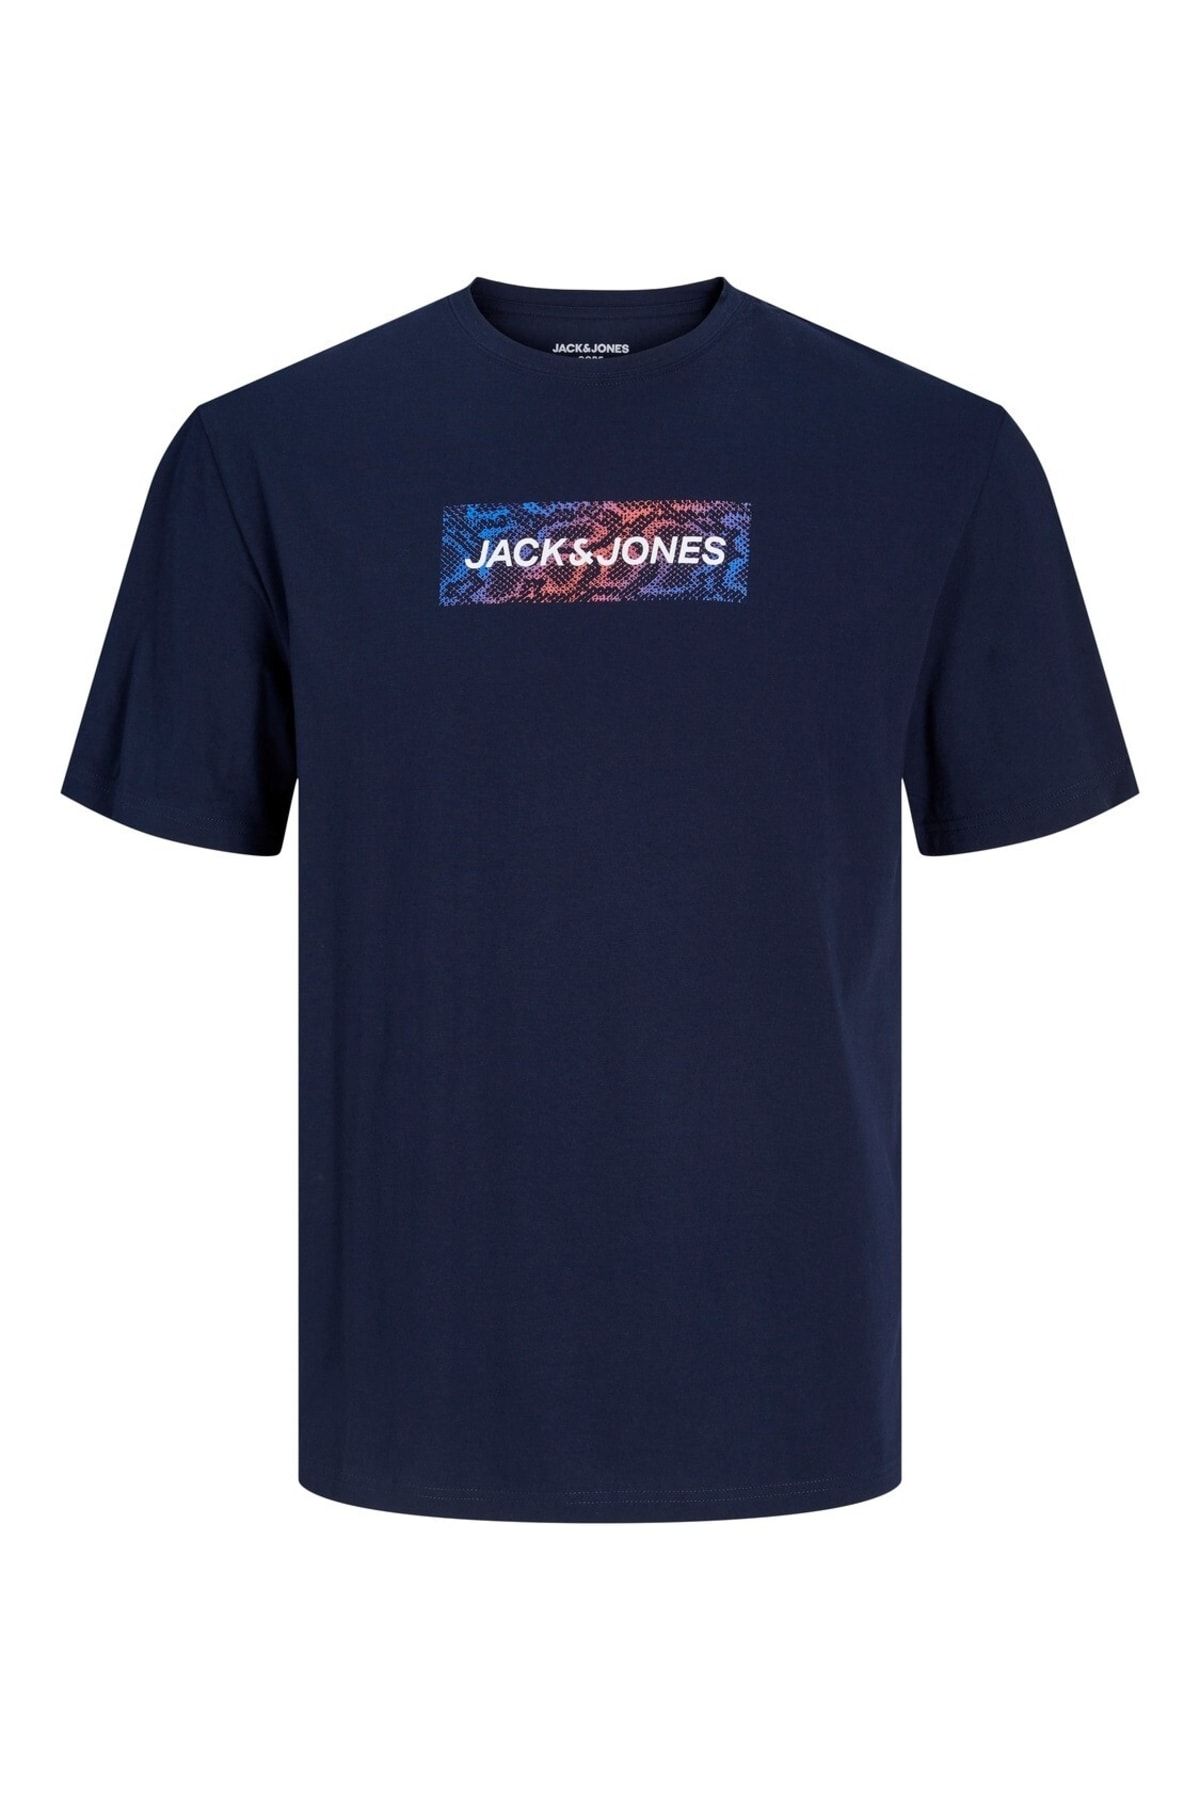 Jack & Jones Jack&jones O Yaka Baskılı Kısa Kollu Lacivert Erkek T-shirt 12229758